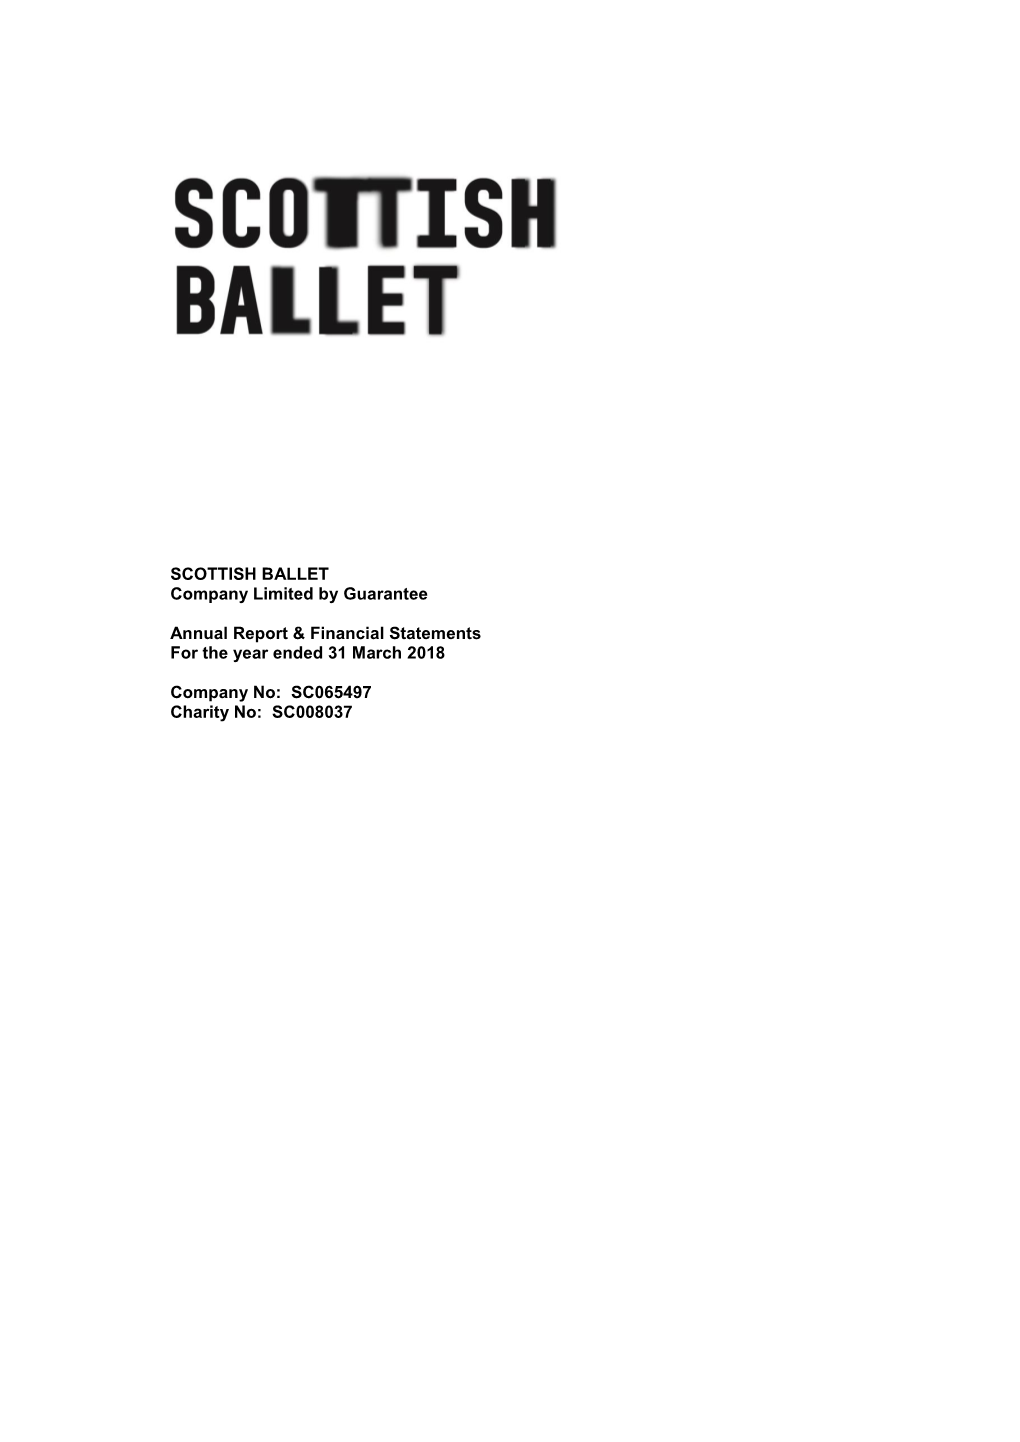 Scottish Ballet Financial Statements 2017/18801.82 KB